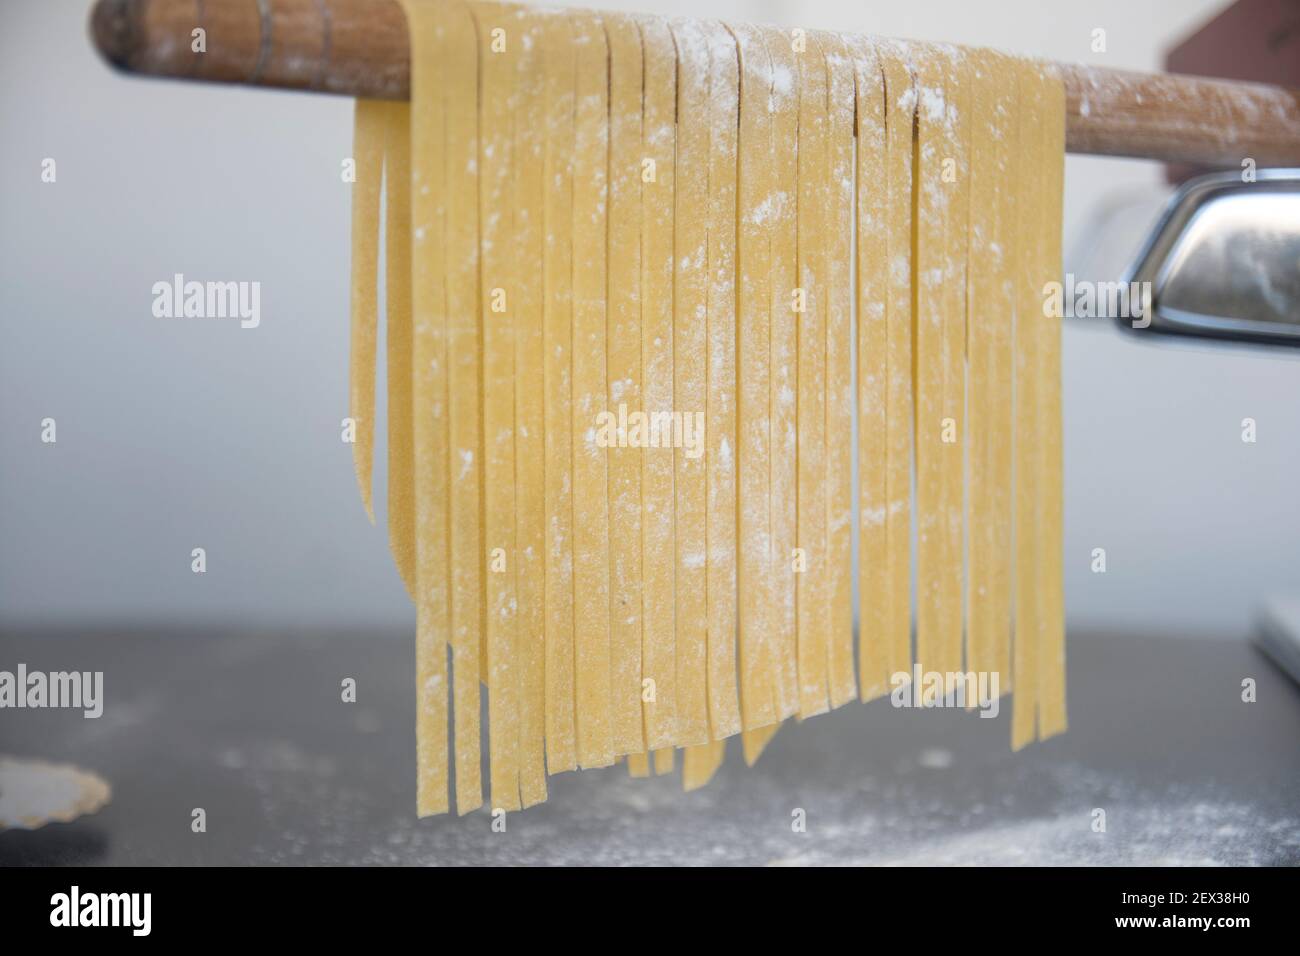 Linguine di pasta fatta in casa appesa su bastone di legno per asciugare.  Tagliatelle italiane fatte in casa appese su un bastone di essiccazione  della pasta Foto stock - Alamy